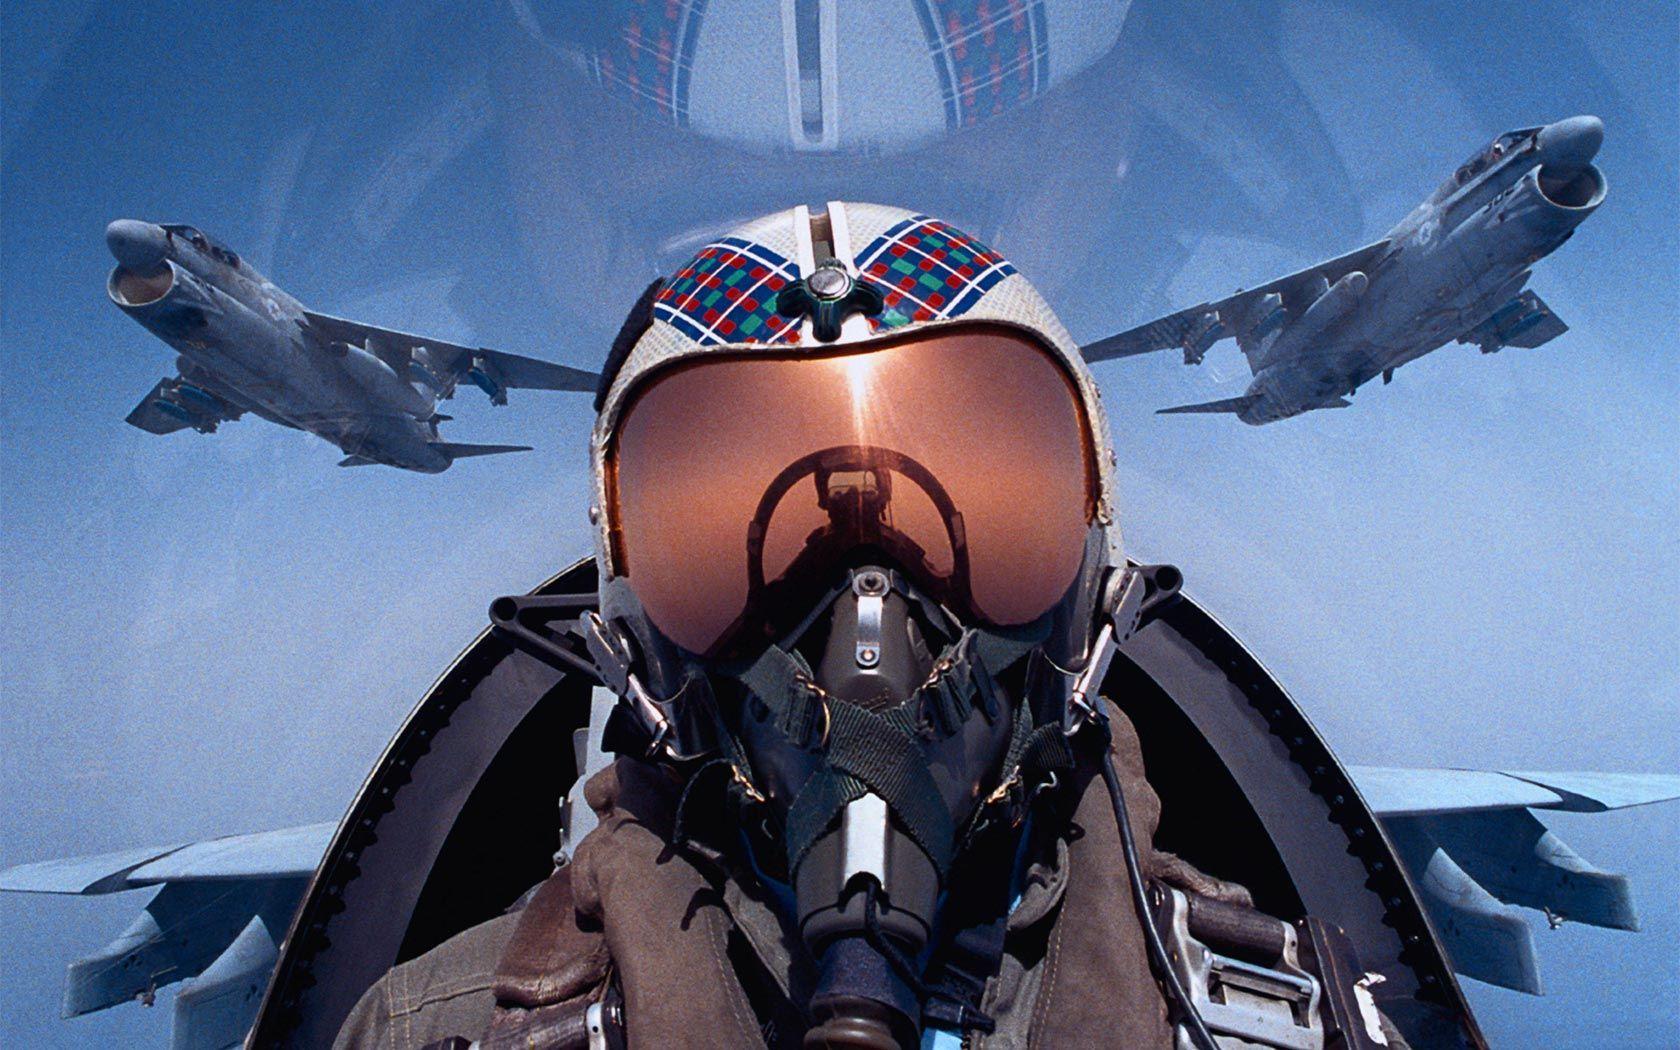 Fighter Jet Pilot HD iPhone Wallpaper. Fighter pilot, Fighter